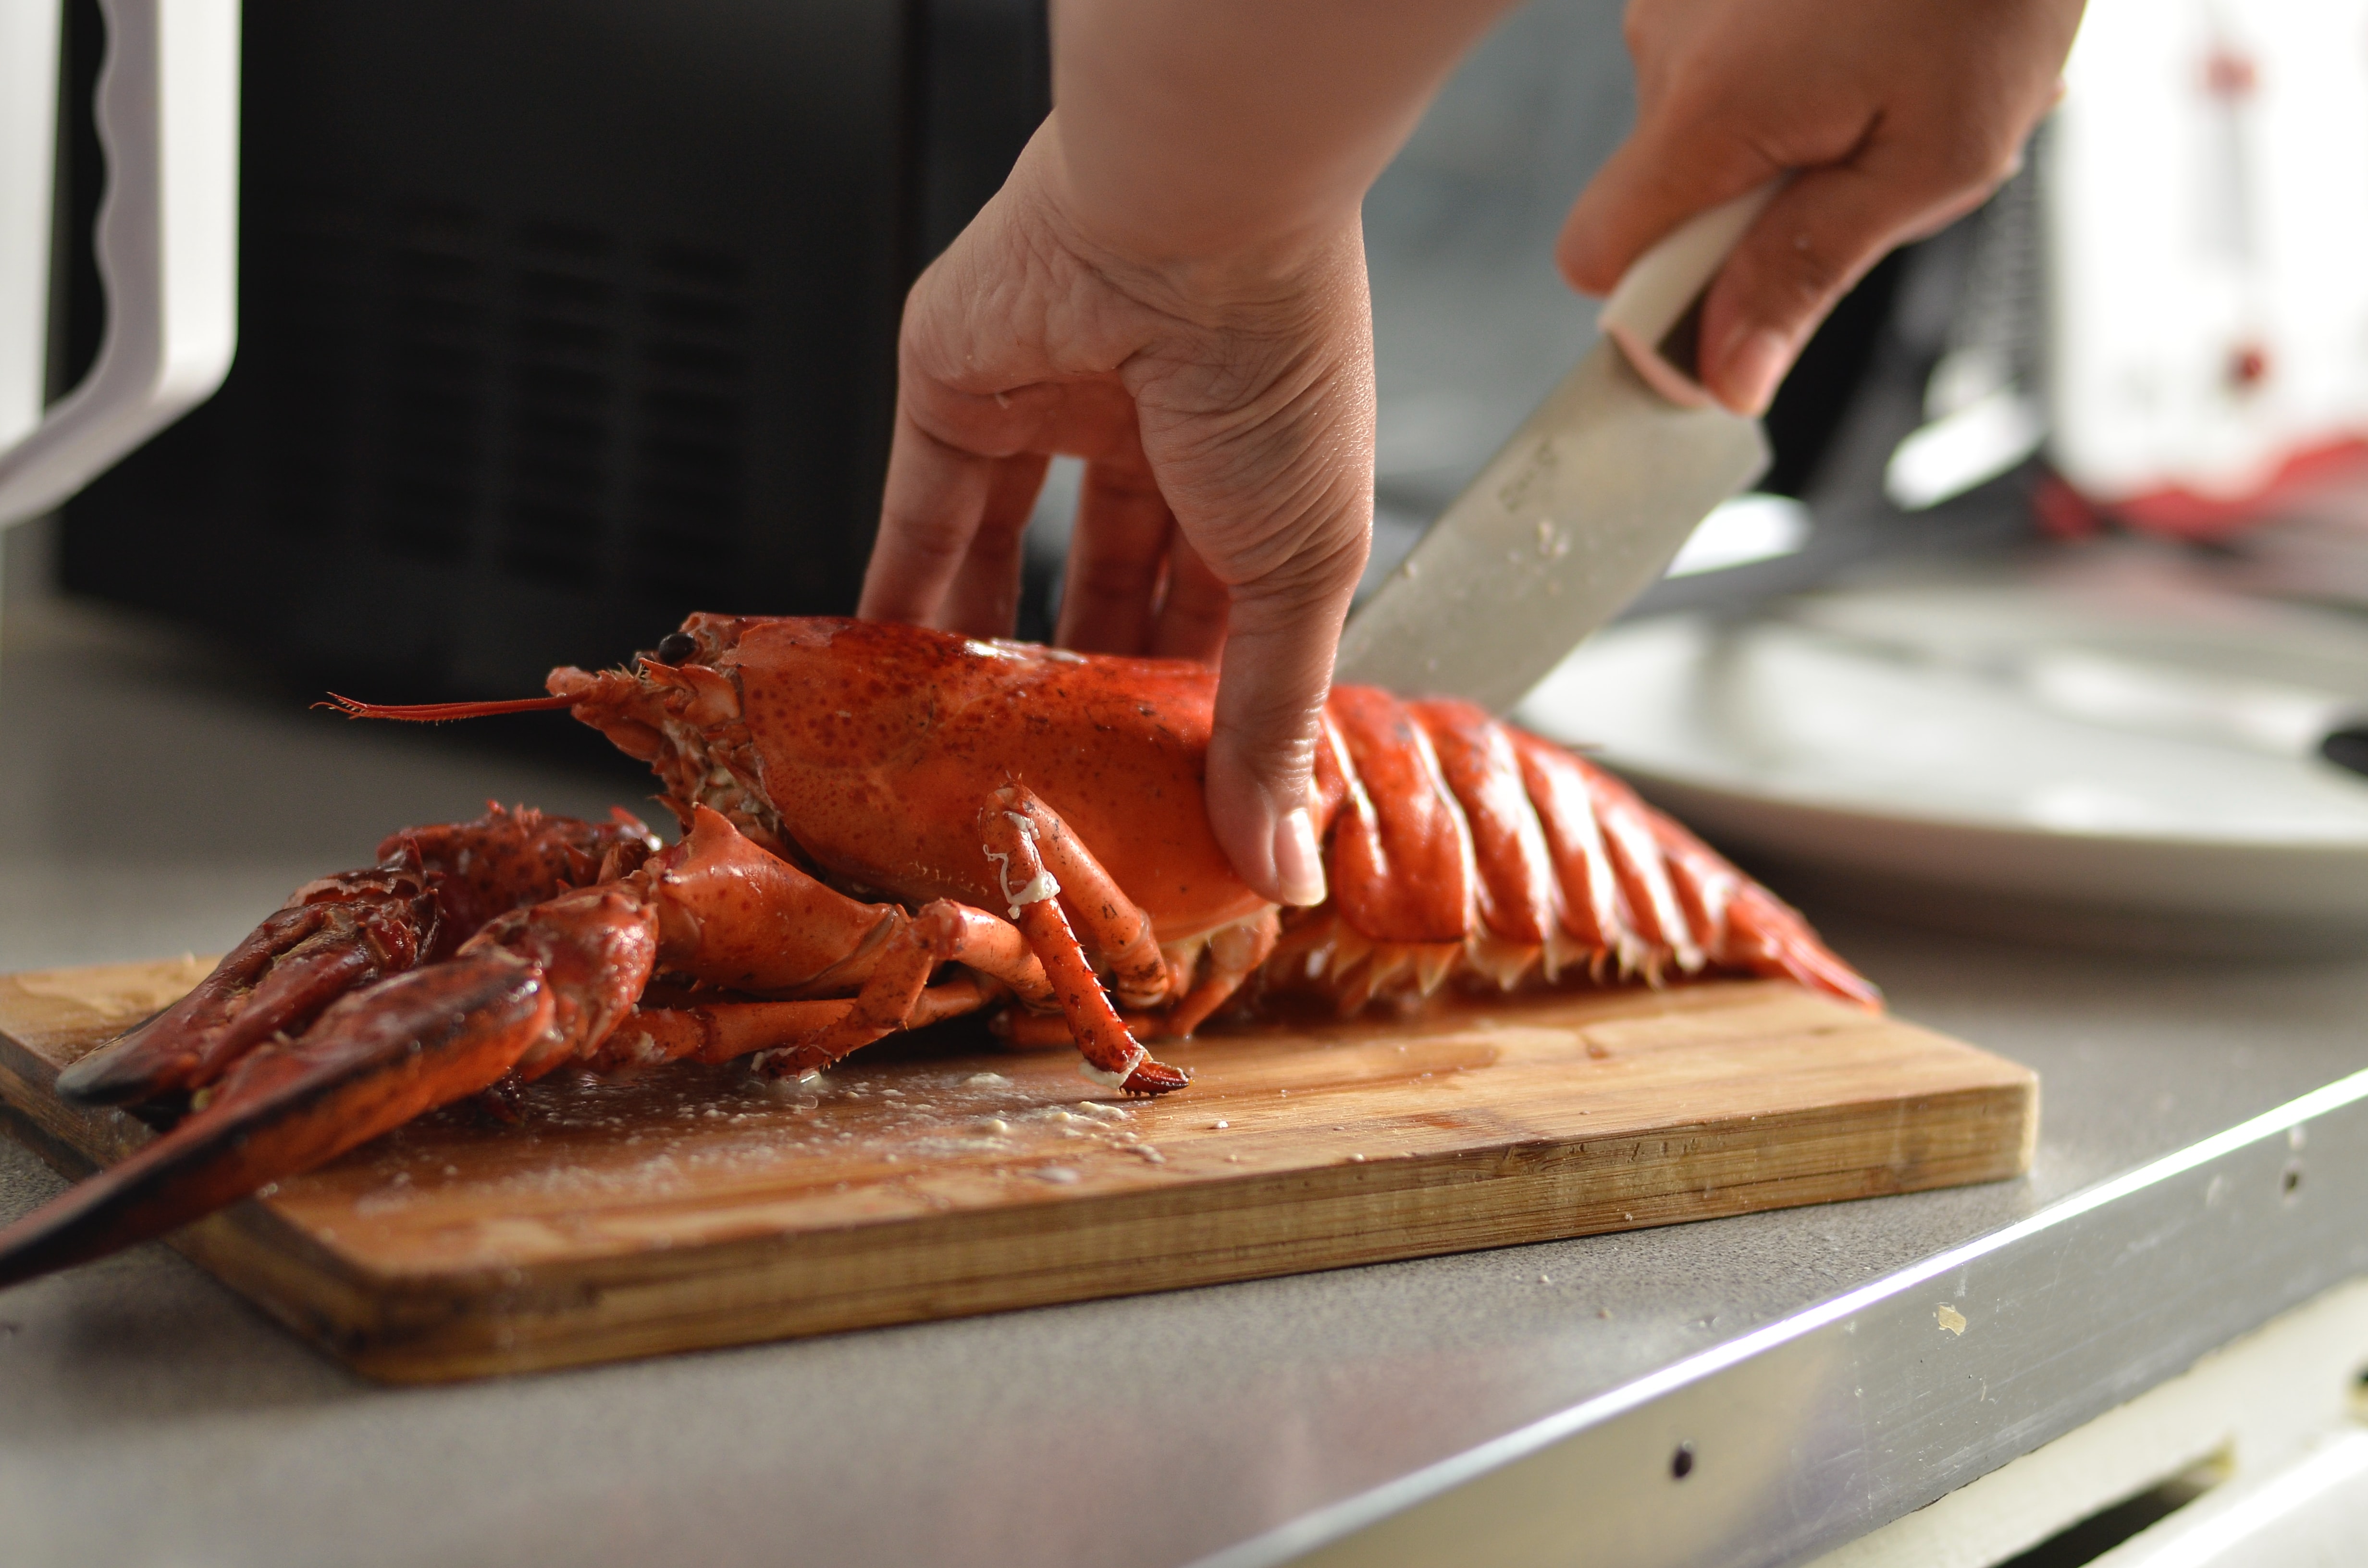 Cutting lobster on a cutting board.